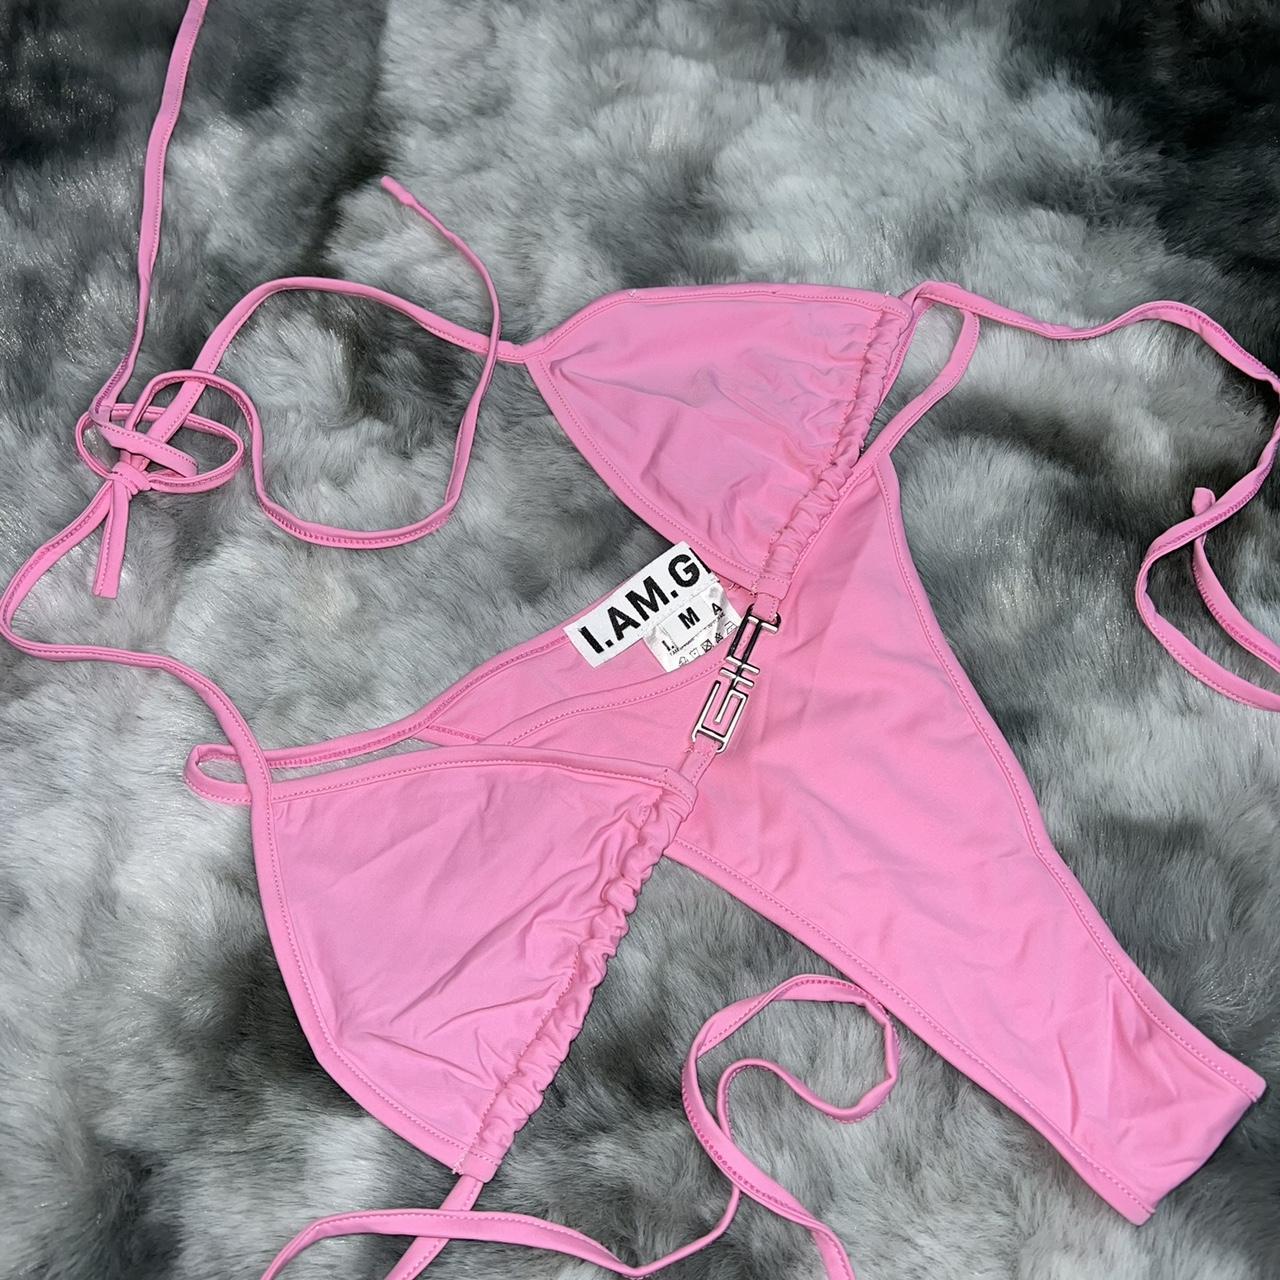 I.AM.GIA Women's Pink Bikinis-and-tankini-sets (2)